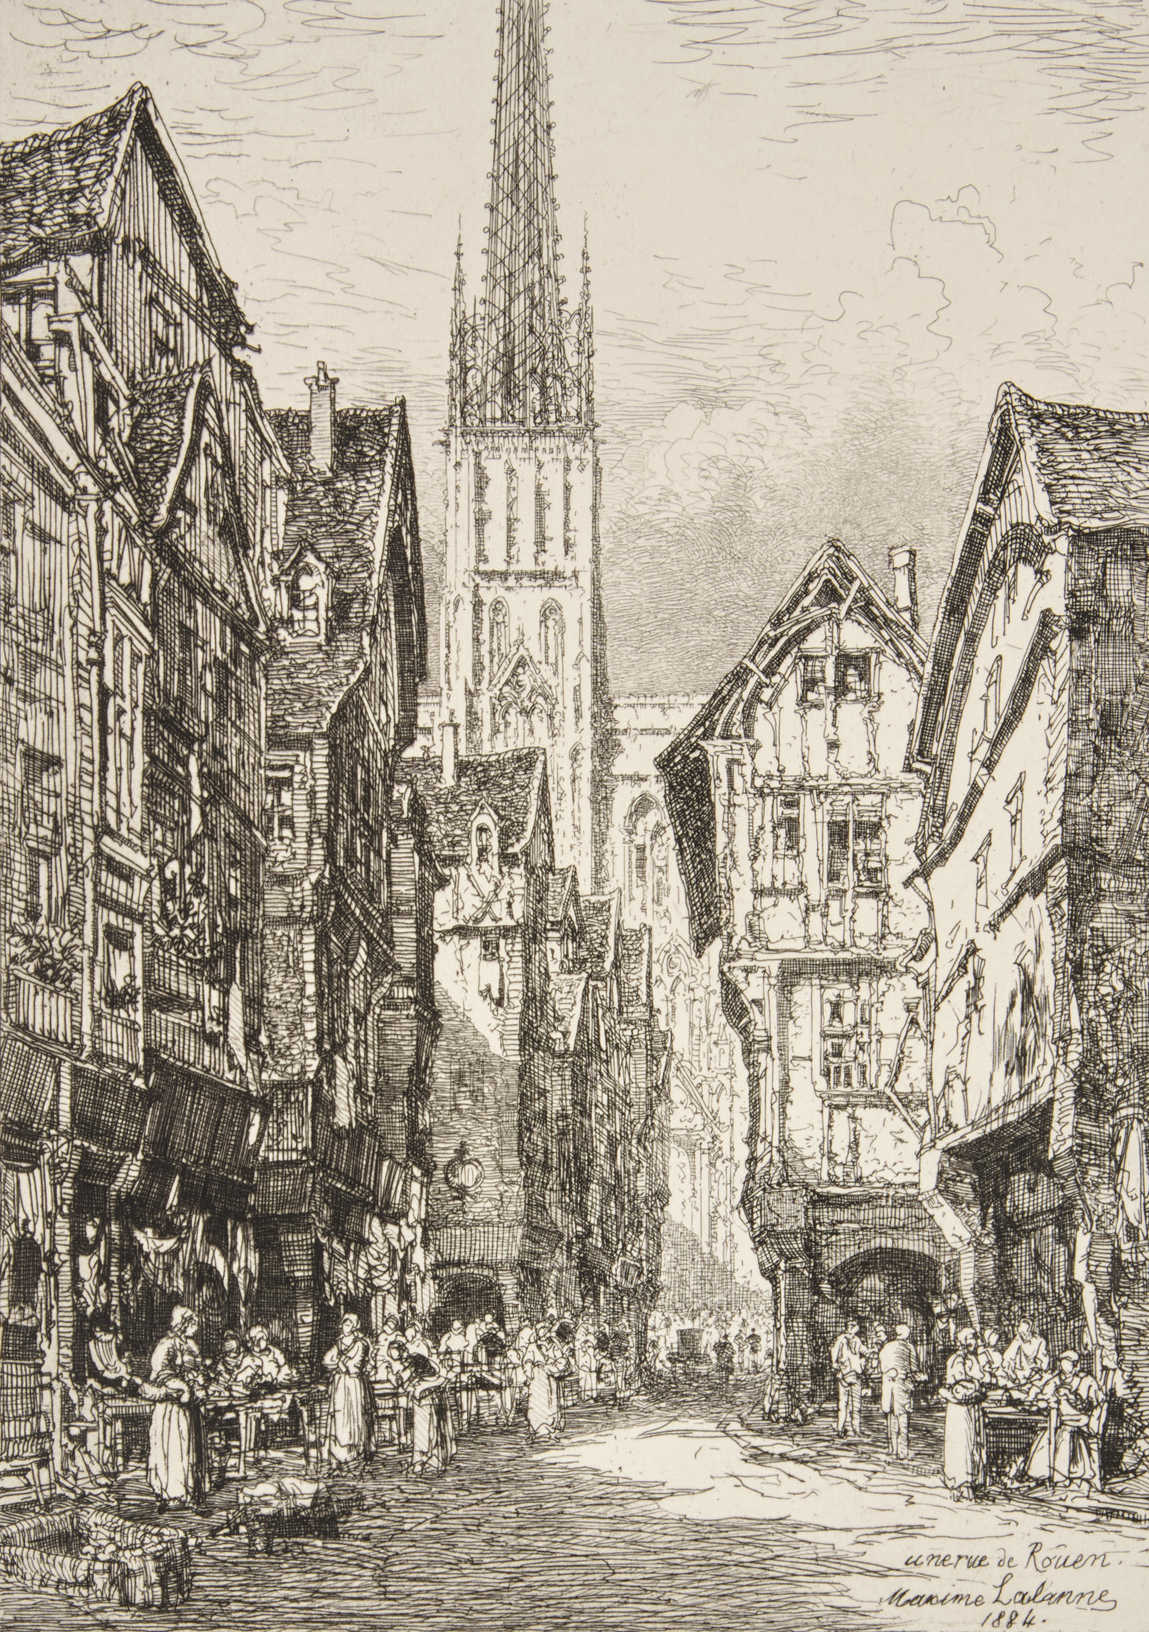 A Street in Rouen